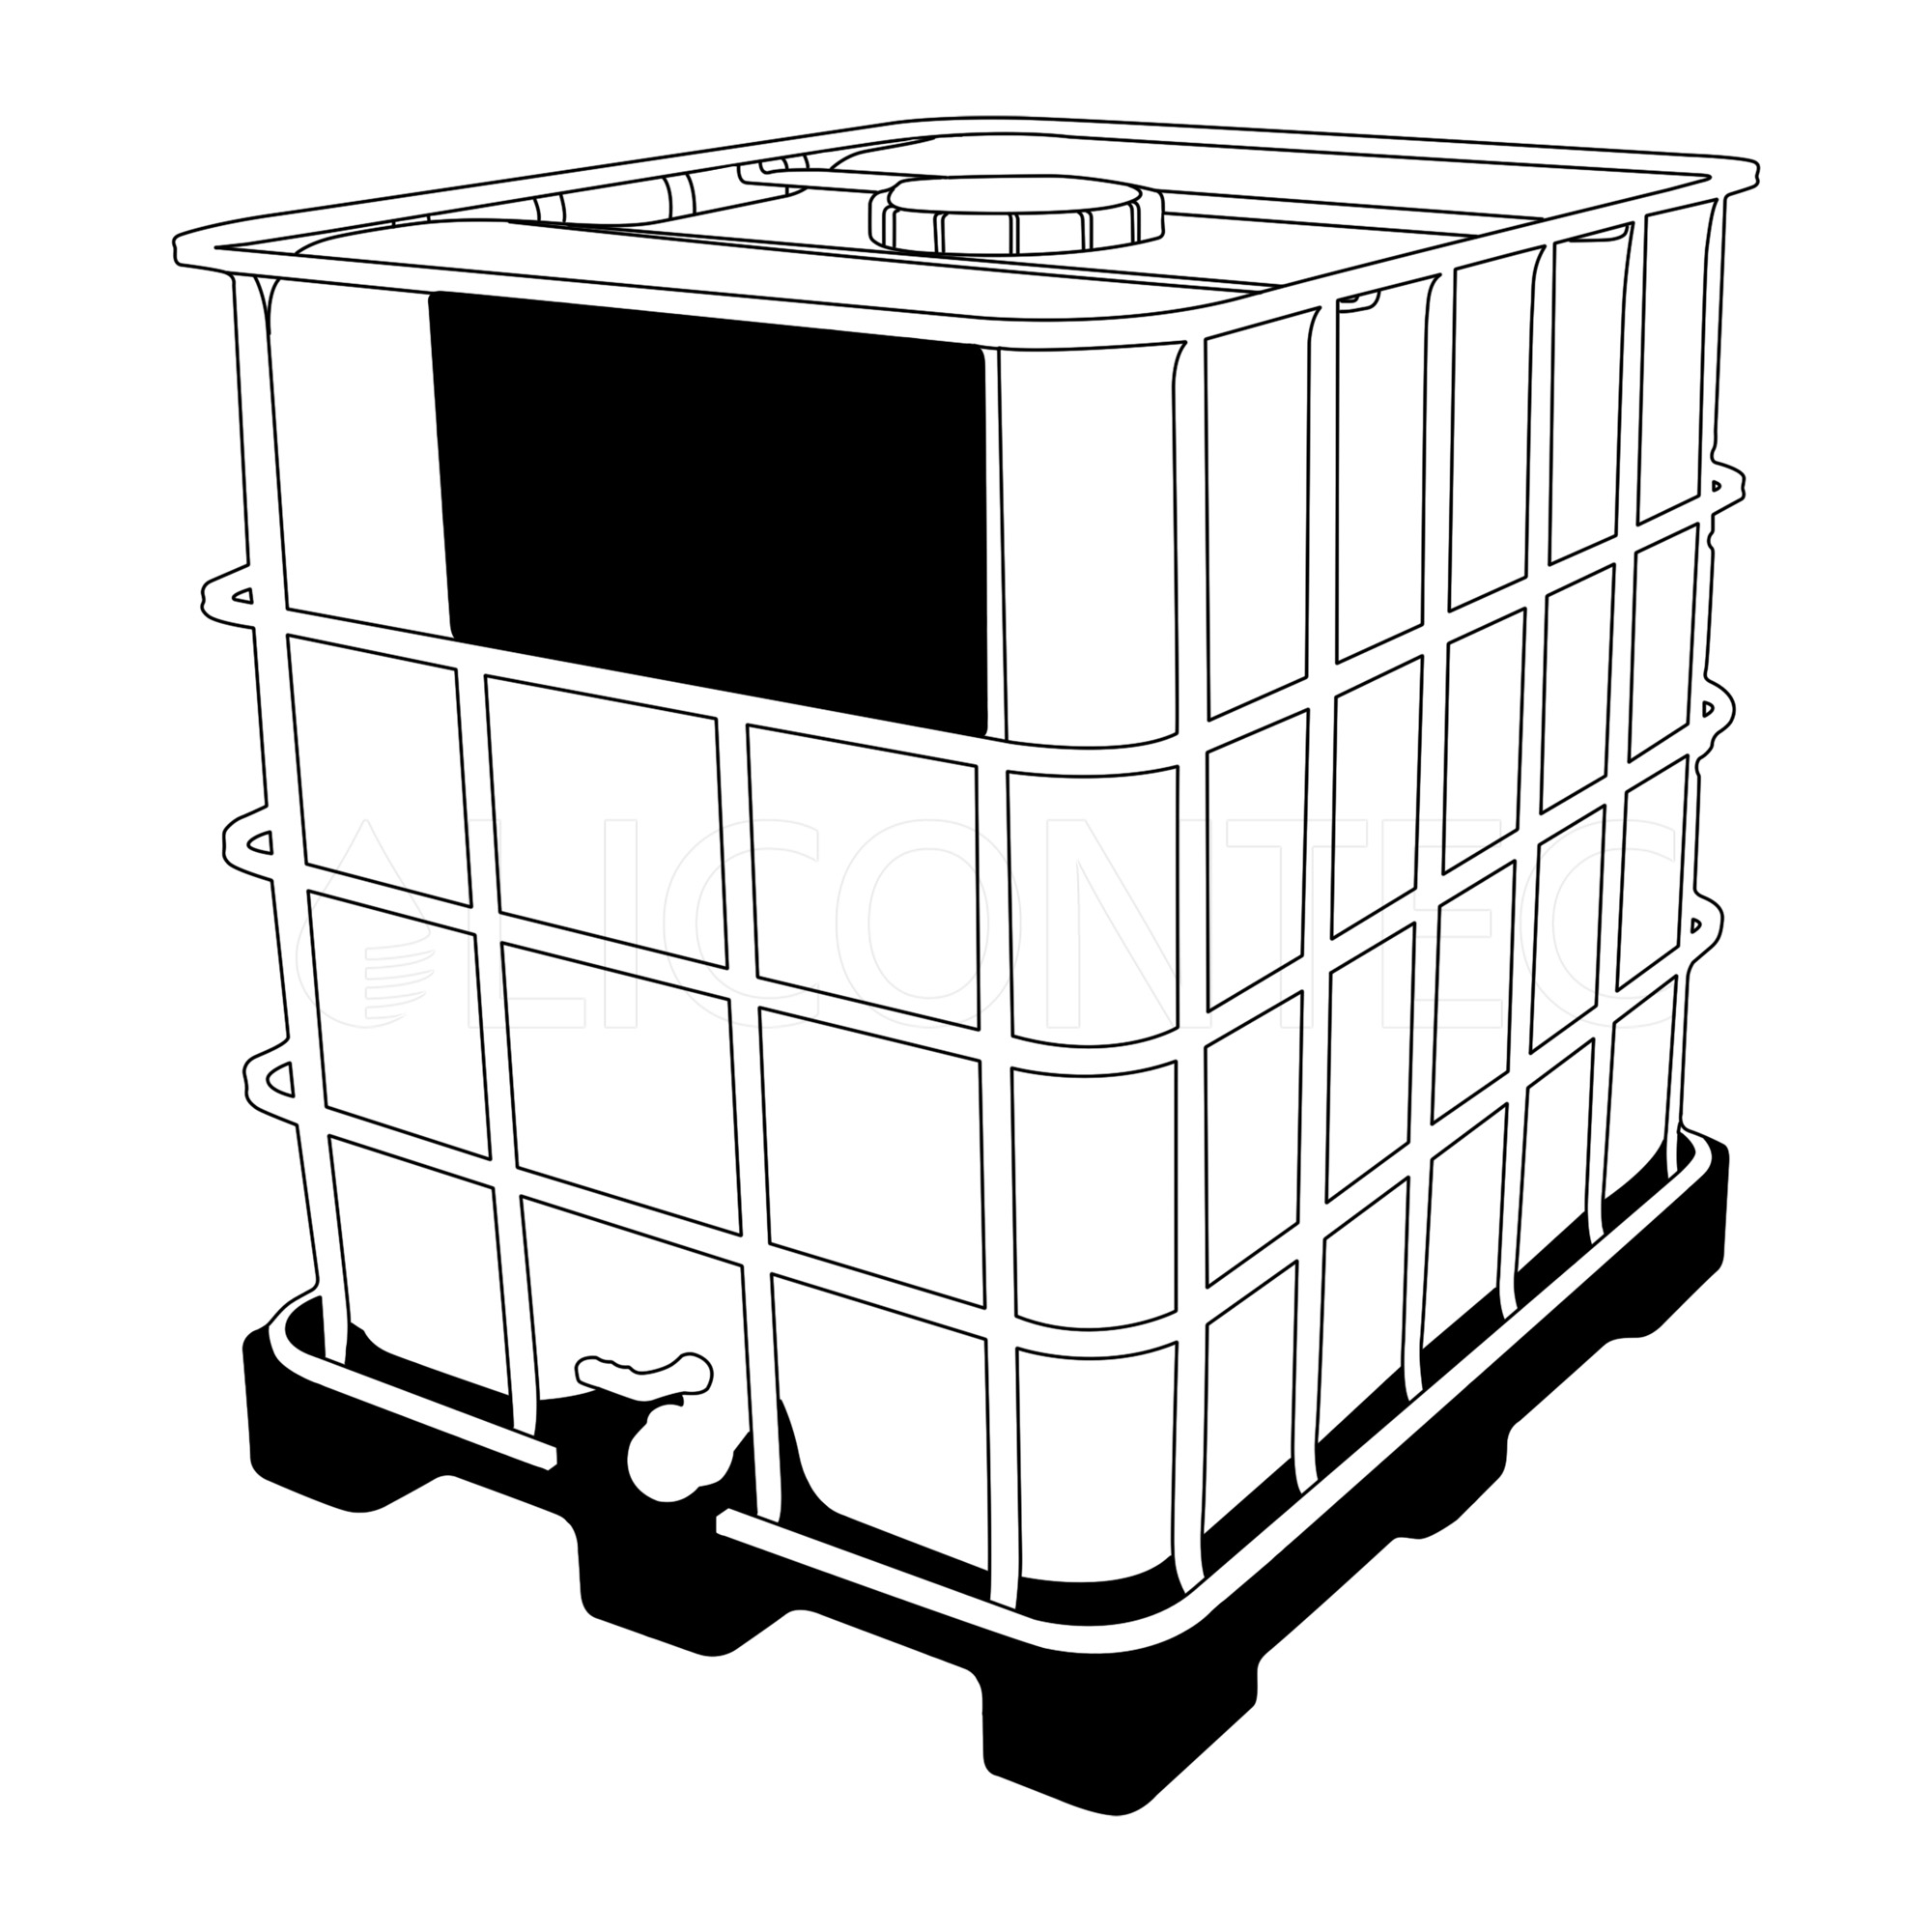 IBC Container 1000l auf Kunststoffpalette - gebraucht, restentleert, lebensm. Sirup